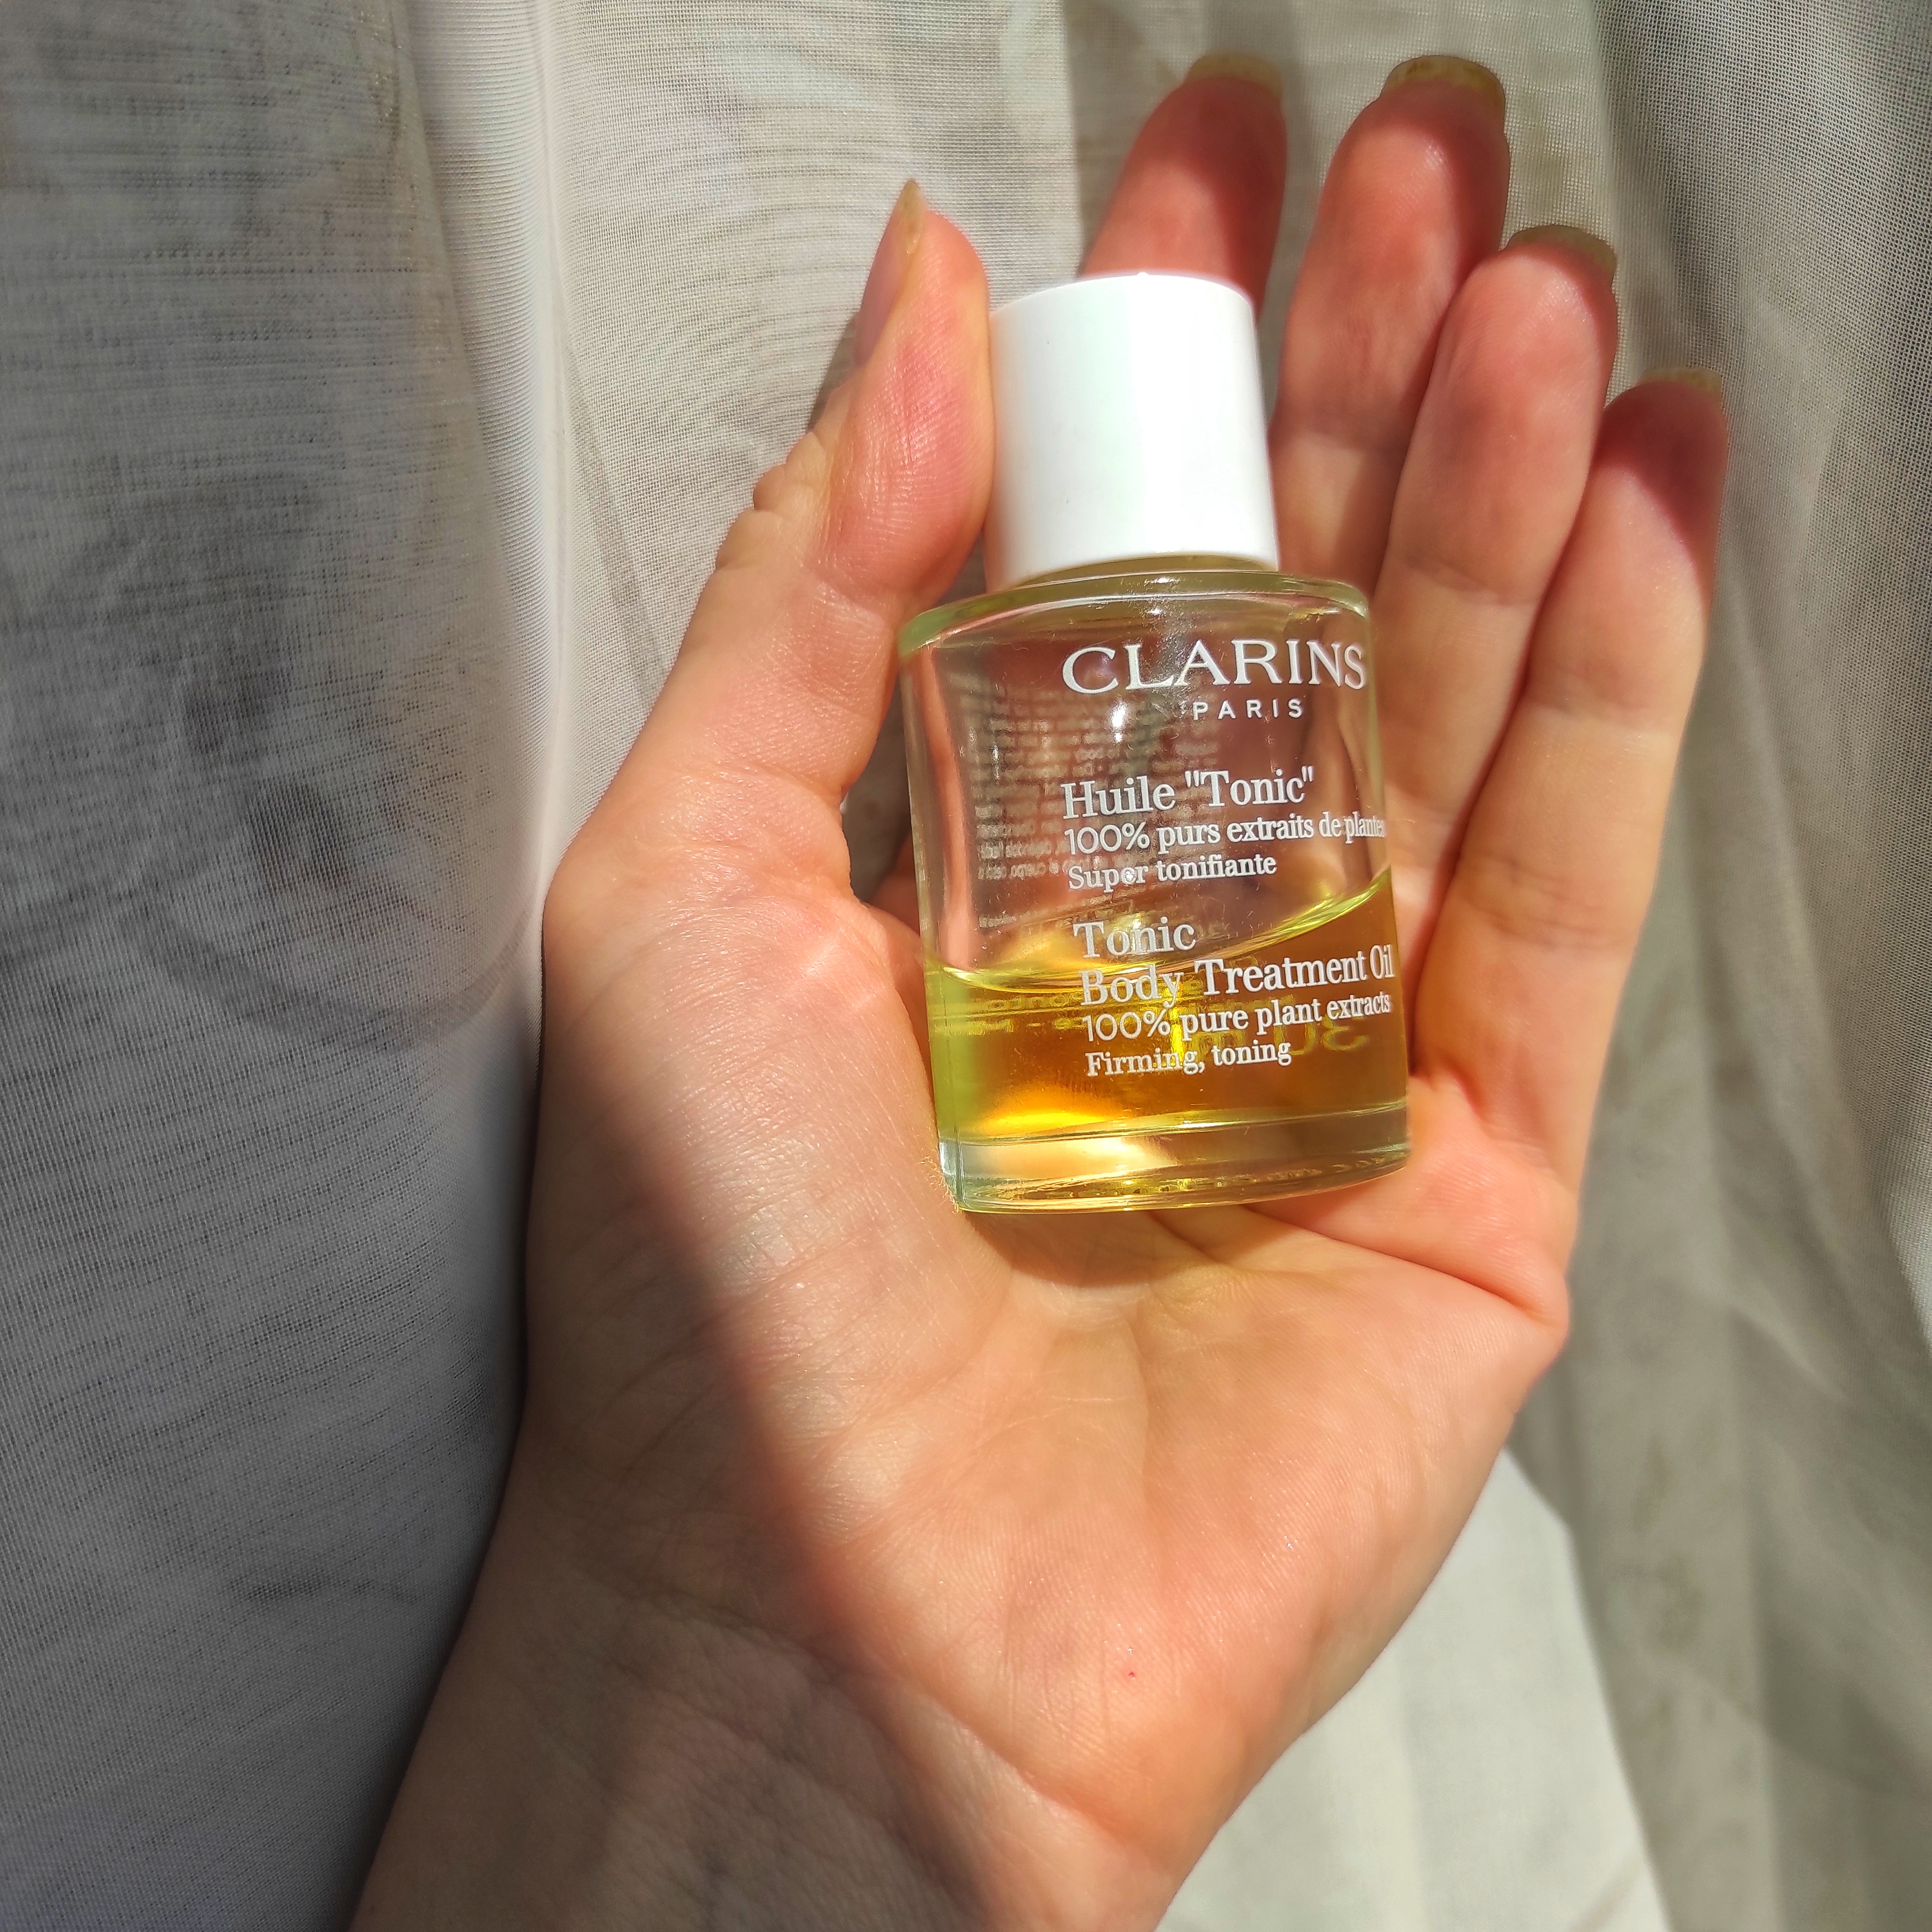 Clarins Body Treatment Oil "Tonic'" або єдиний засіб, що зробив мої розтяжки невидимими